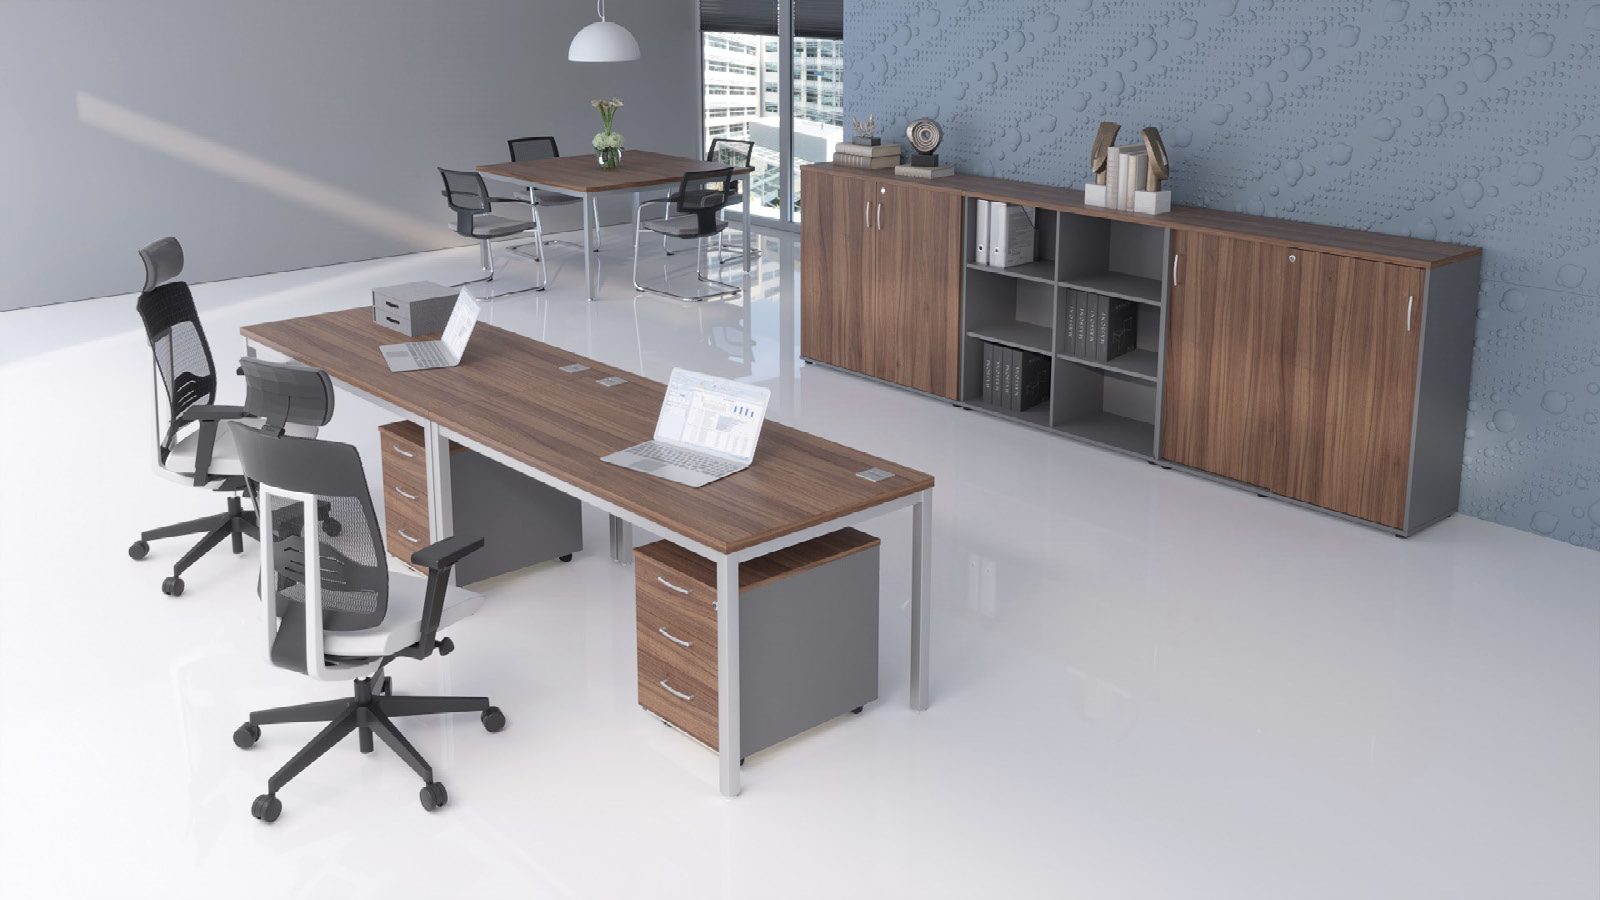 Biuro wyposażone w stanowiska pracy i miejsce do spotkań. Z przodu biurka z kontenerkami i szafą, z tyłu - stół z krzesłami.